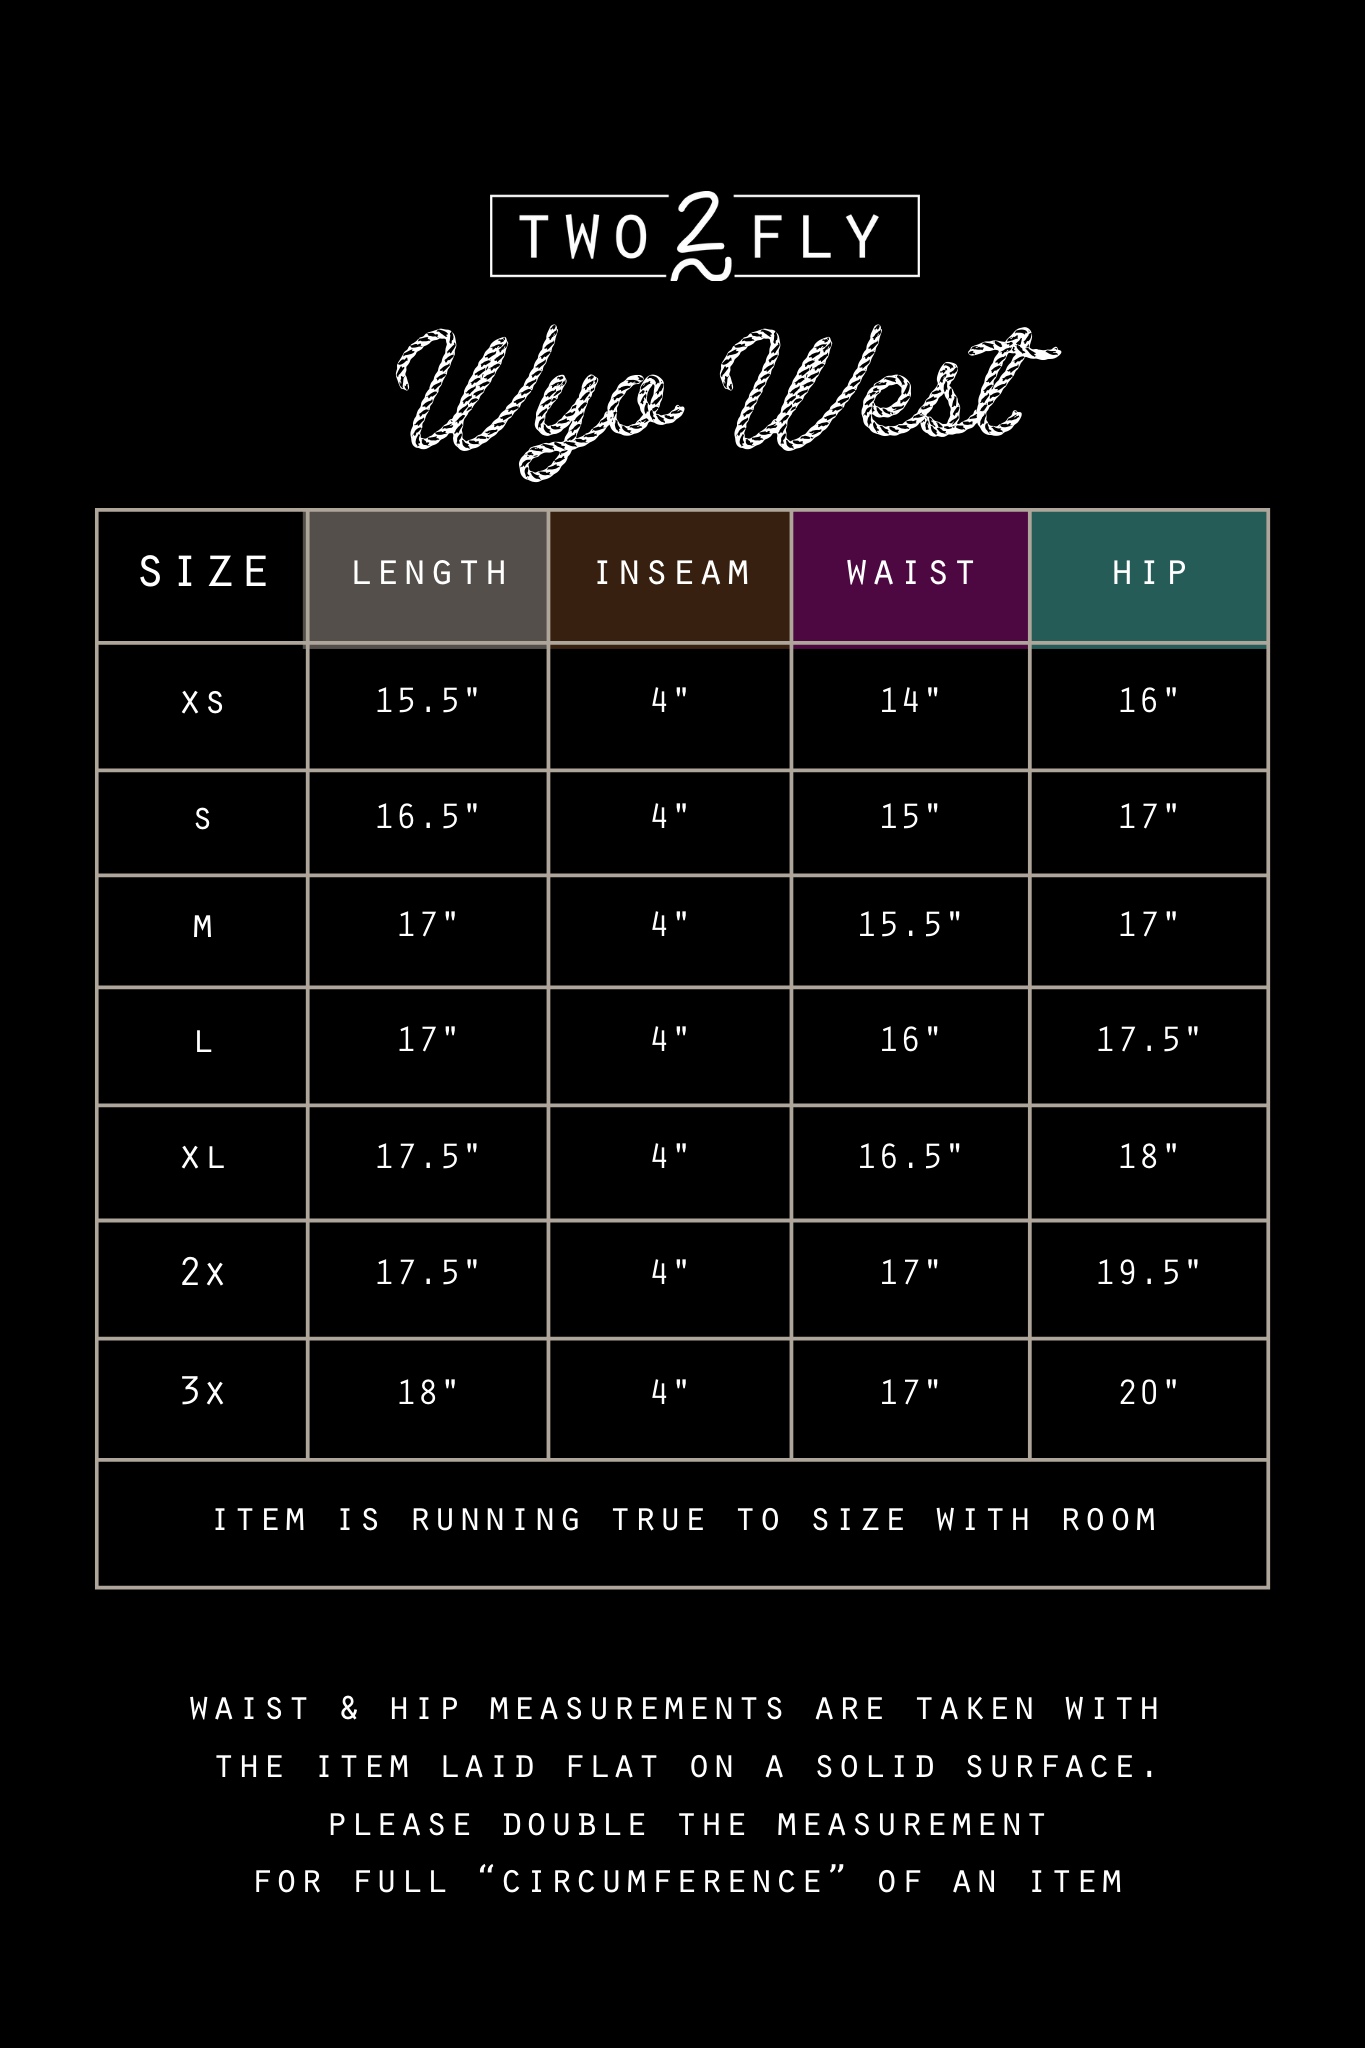 Wyo West Shorts